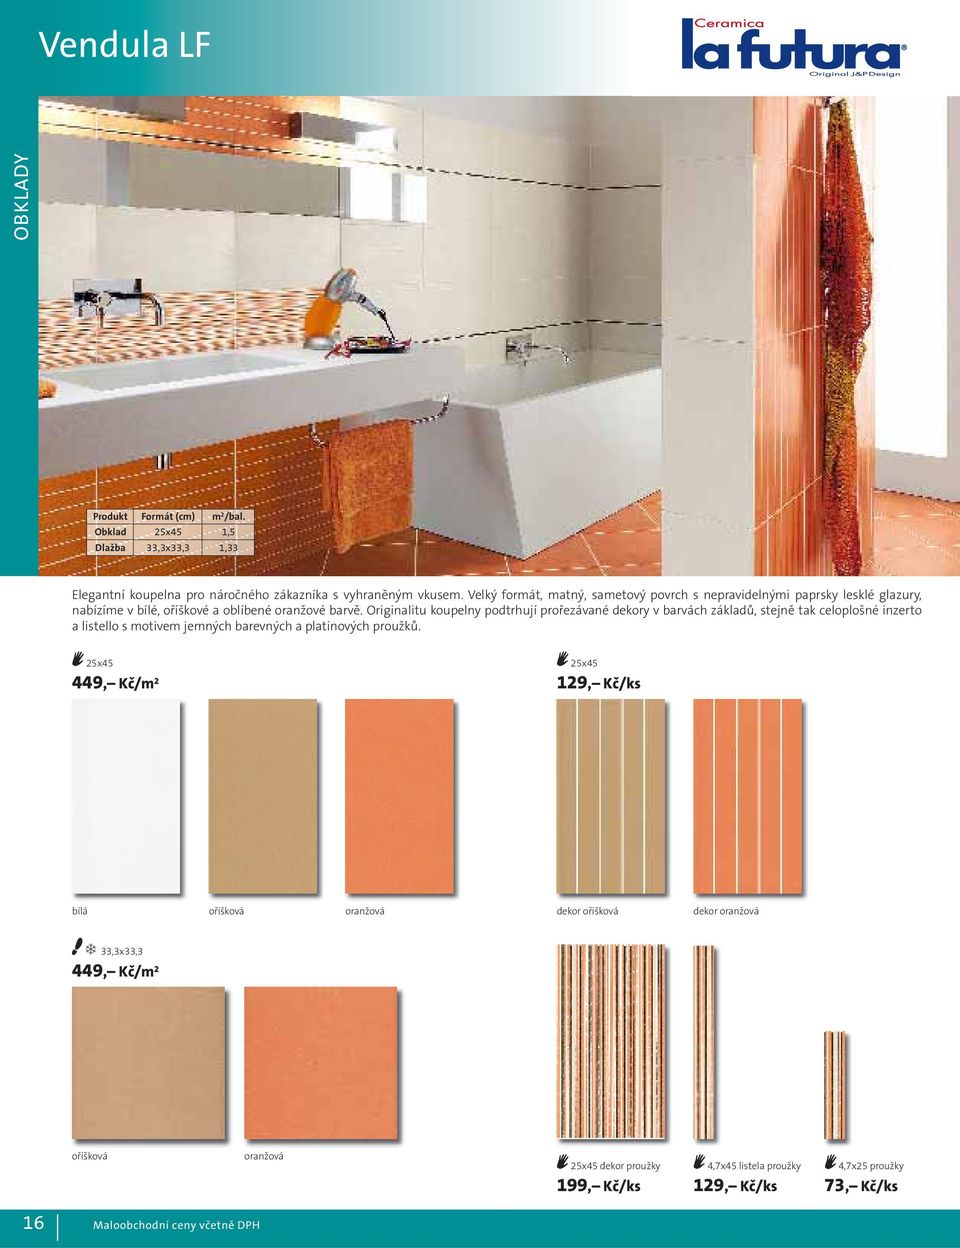 Originalitu koupelny podtrhují prořezávané dekory v barvách základů, stejně tak celoplošné inzerto a listello s motivem jemných barevných a platinových proužků.